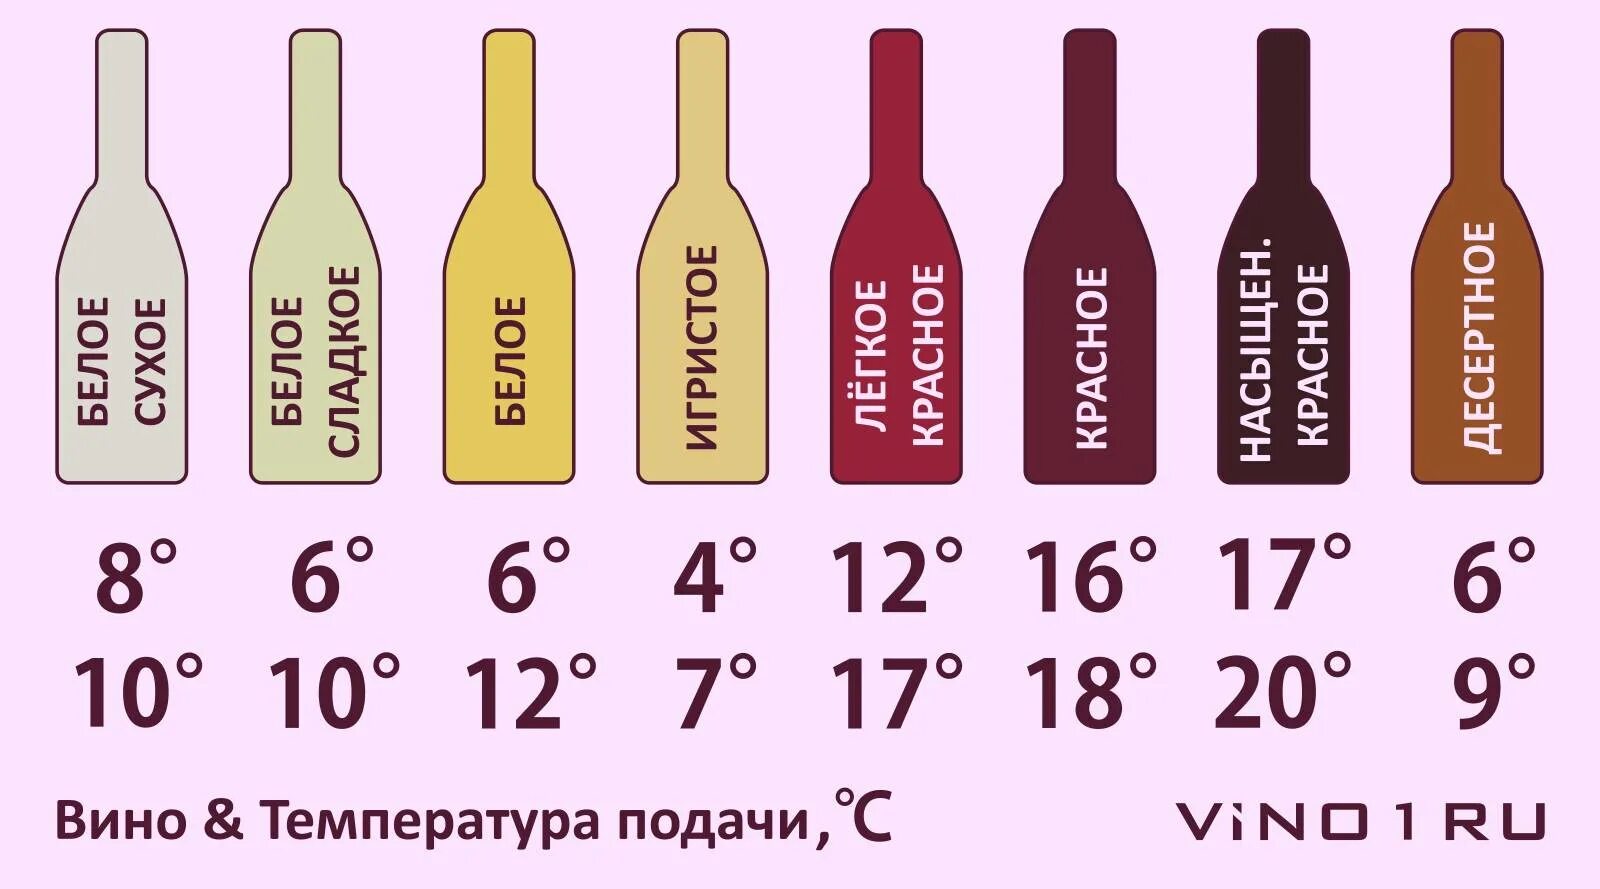 Полусладкое сколько сахара. Сколько градусов в вине. Температура подачи вина. Градусы в вине. Темпераиурамхранения вина.